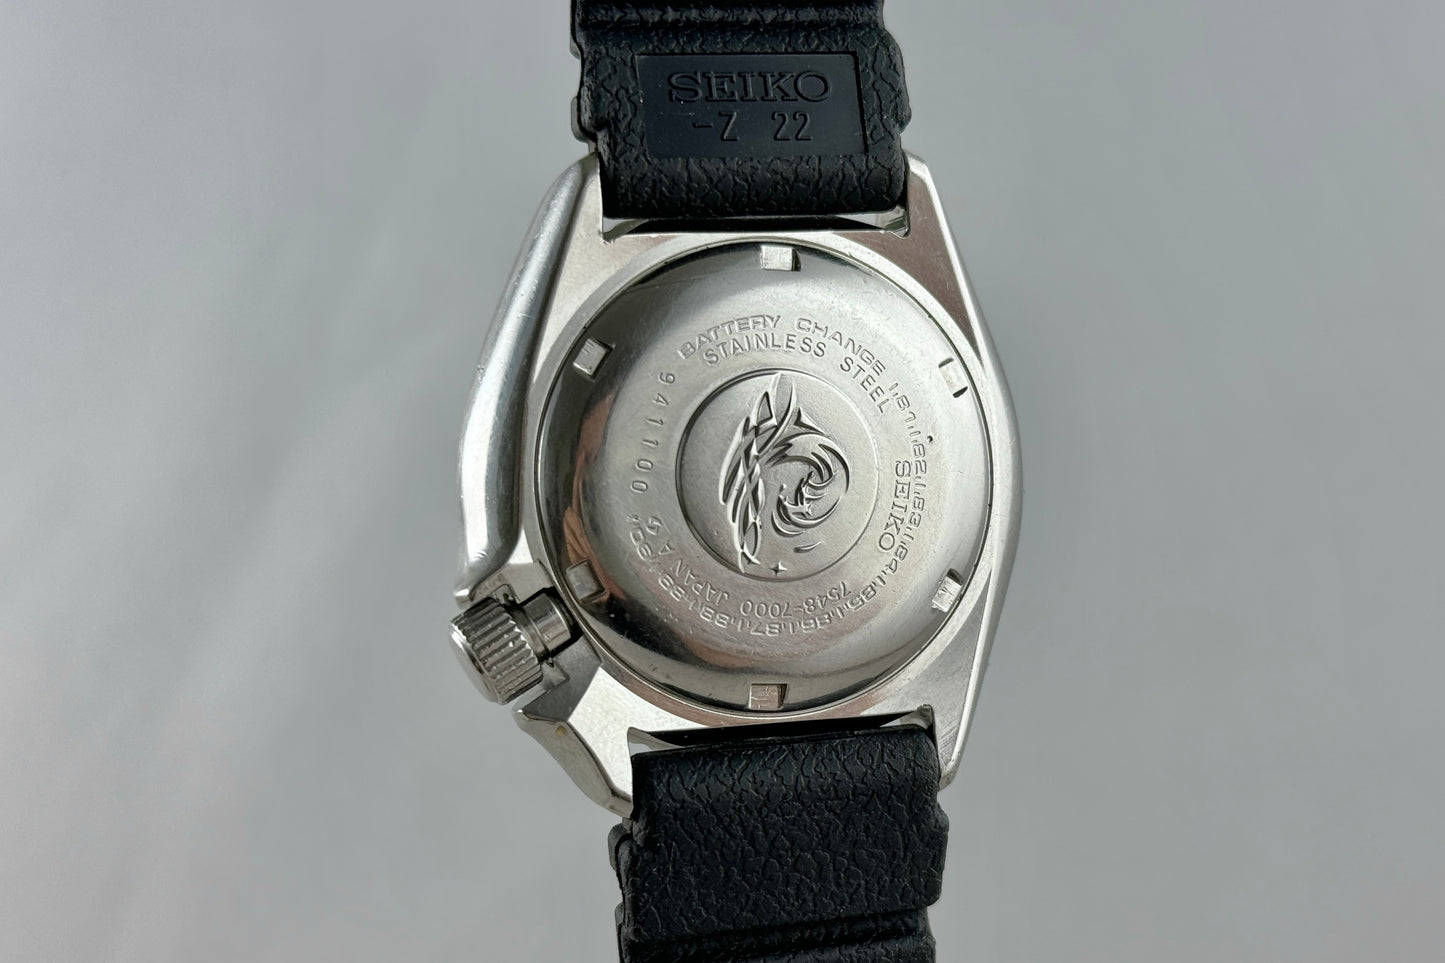 Seiko Diver JDM 7548-7000 lumeville montre vintage 